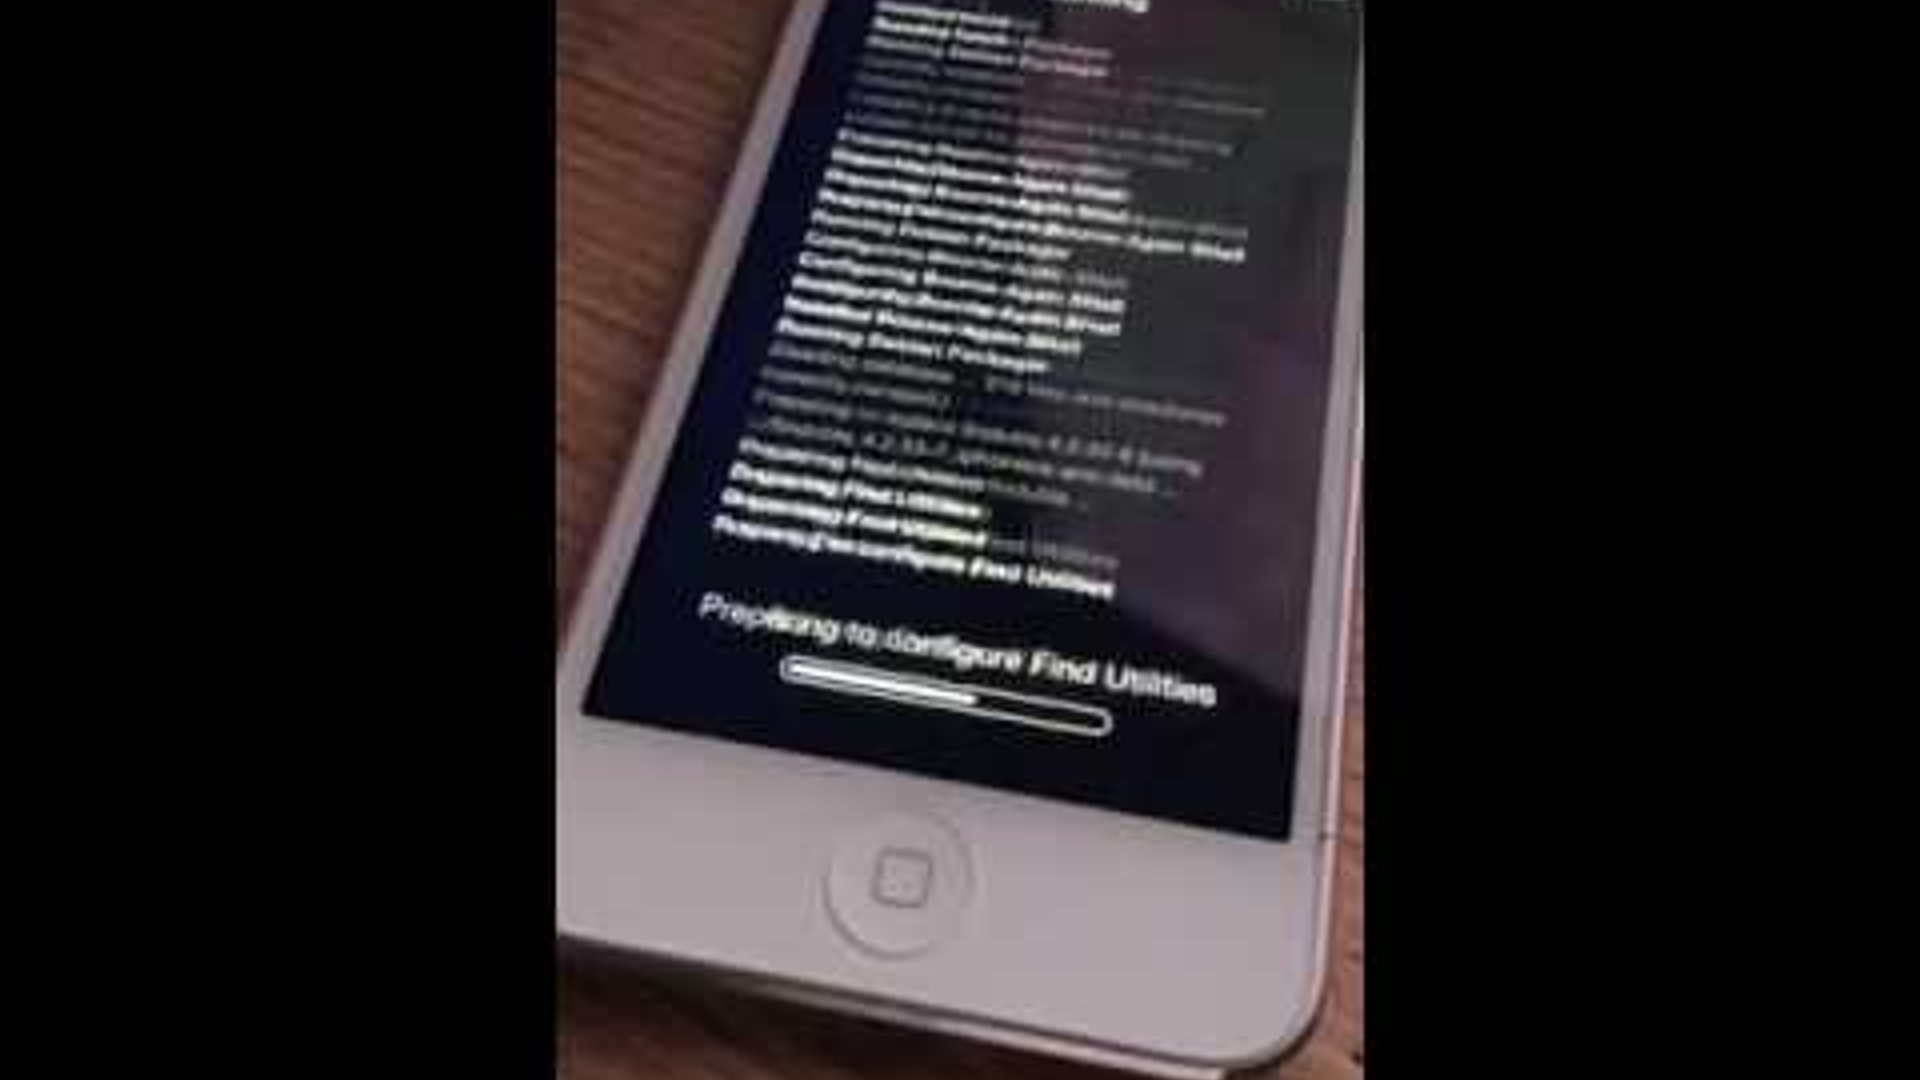 Jailbreak iOS 9.3.2 Using Mobile Safari